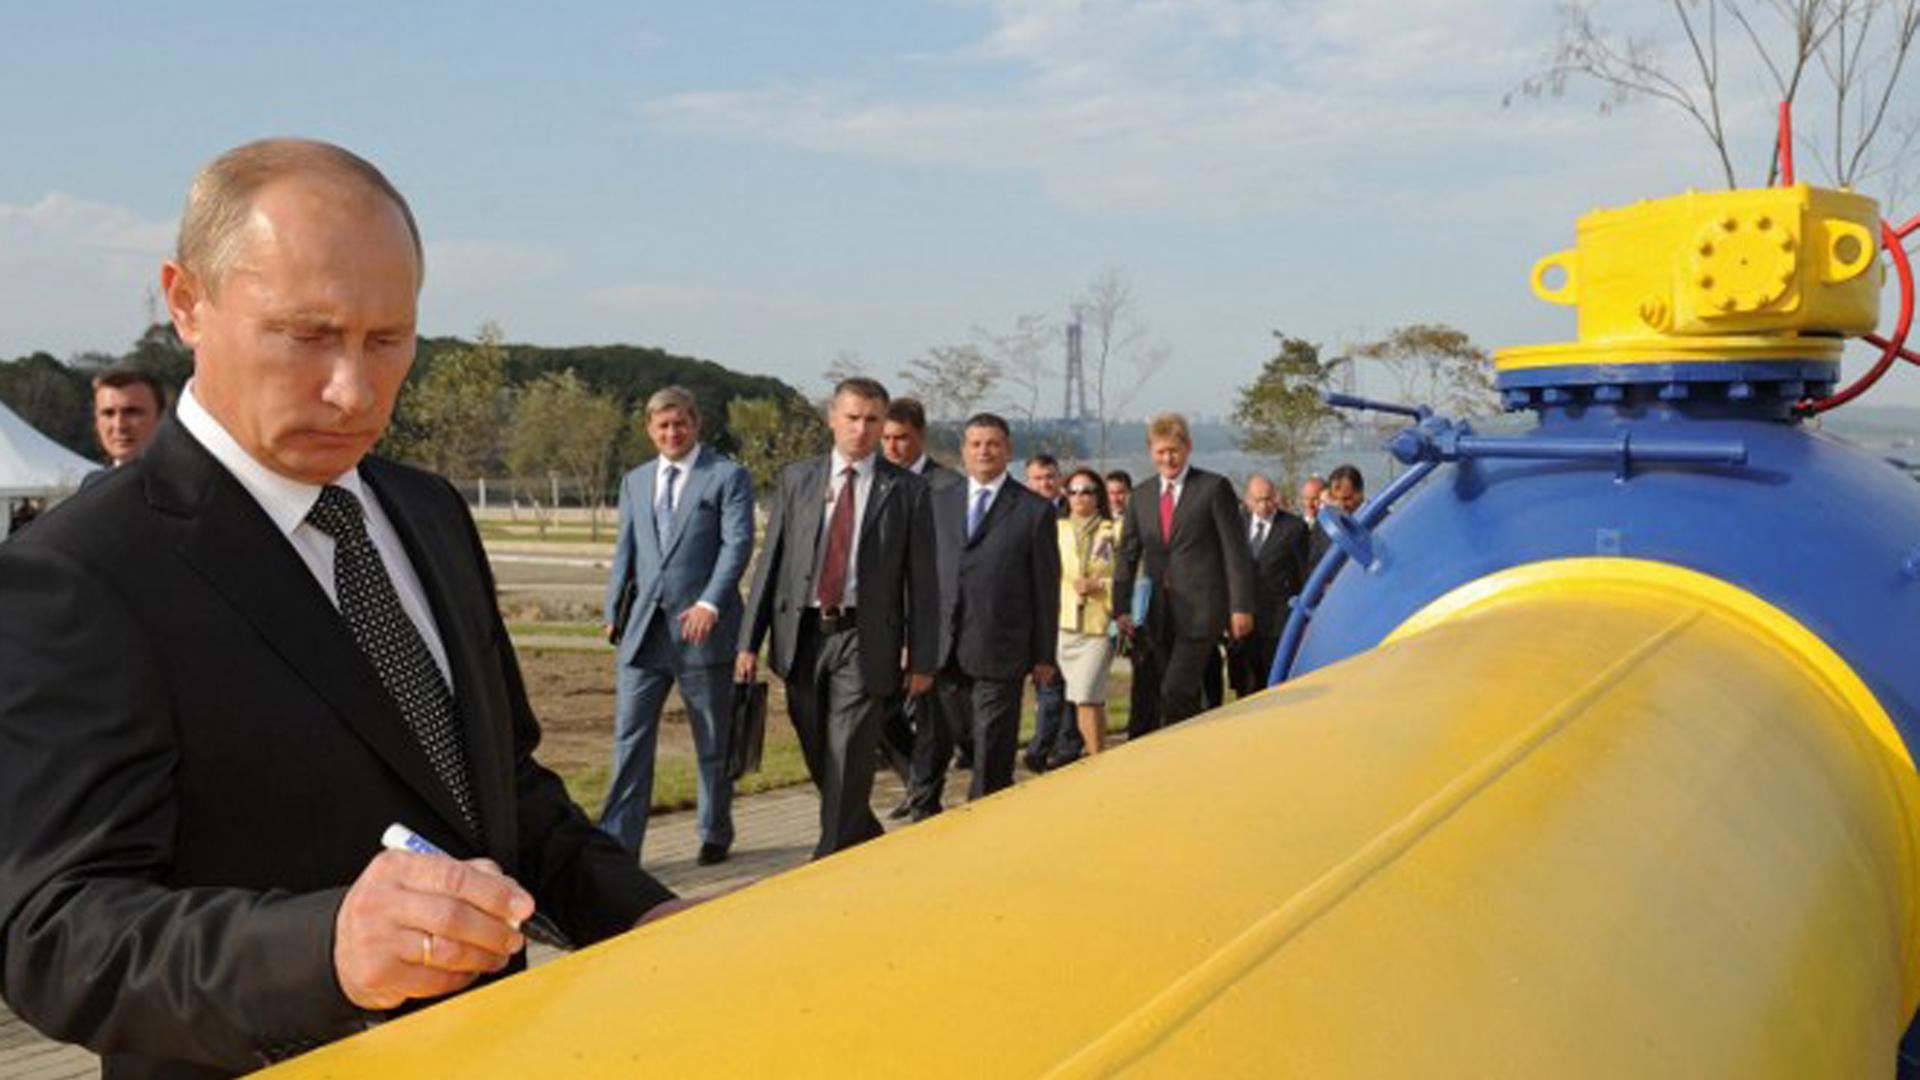 Russlands Präsident Putin im Jahr 2011 bei der Inbetriebnahme einer Pipeline in Wladiwostock.